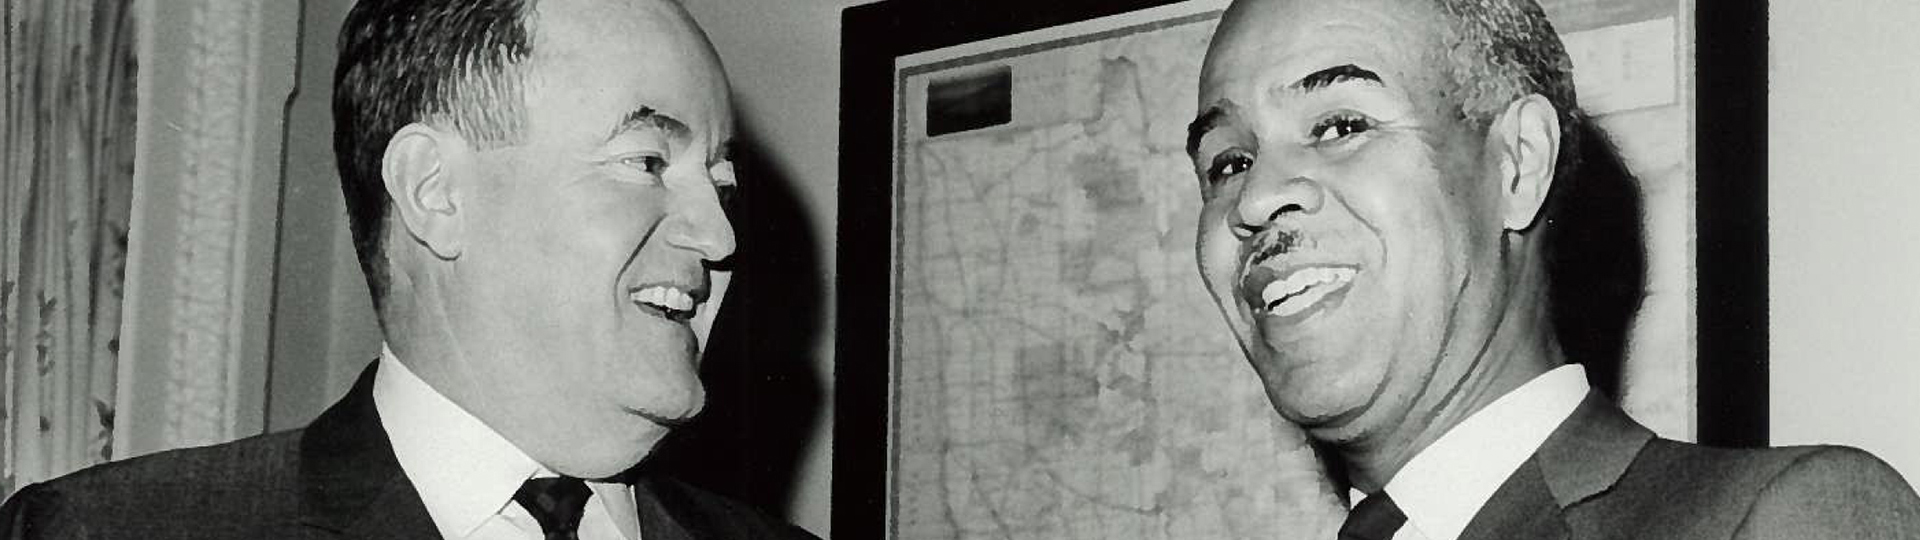 Hubert Humphrey and Roy Wilkins